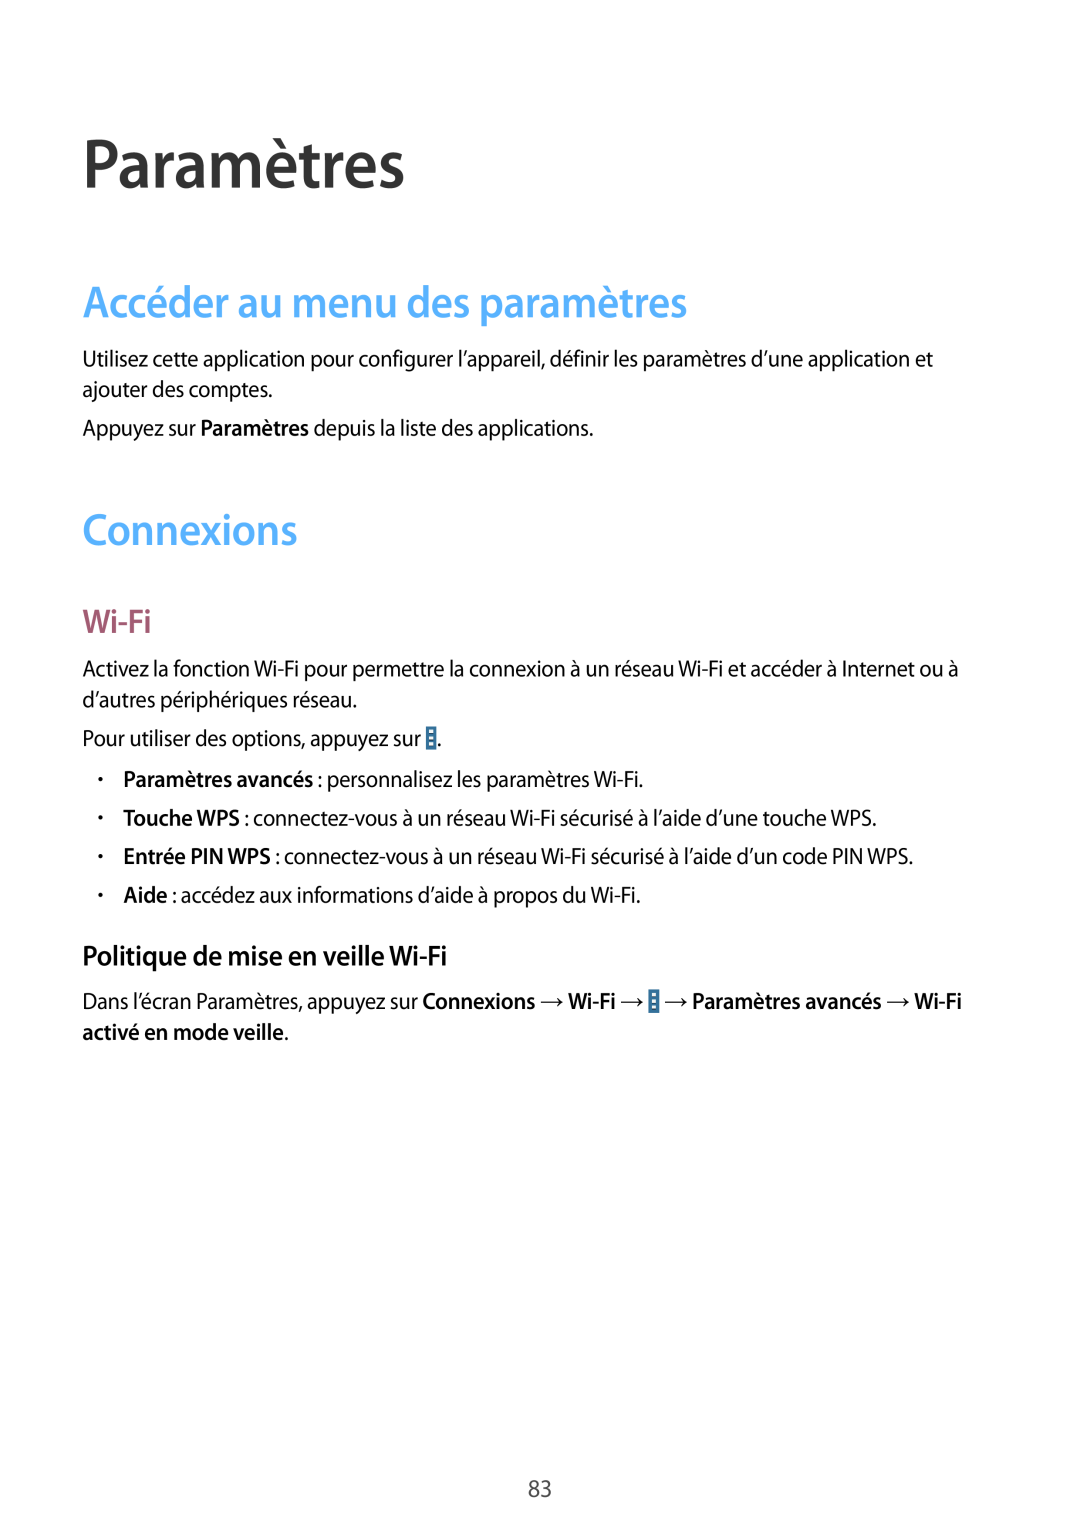 Samsung SM-T530NYKAXEF manual Paramètres, Accéder au menu des paramètres, Connexions, Politique de mise en veille Wi-Fi 